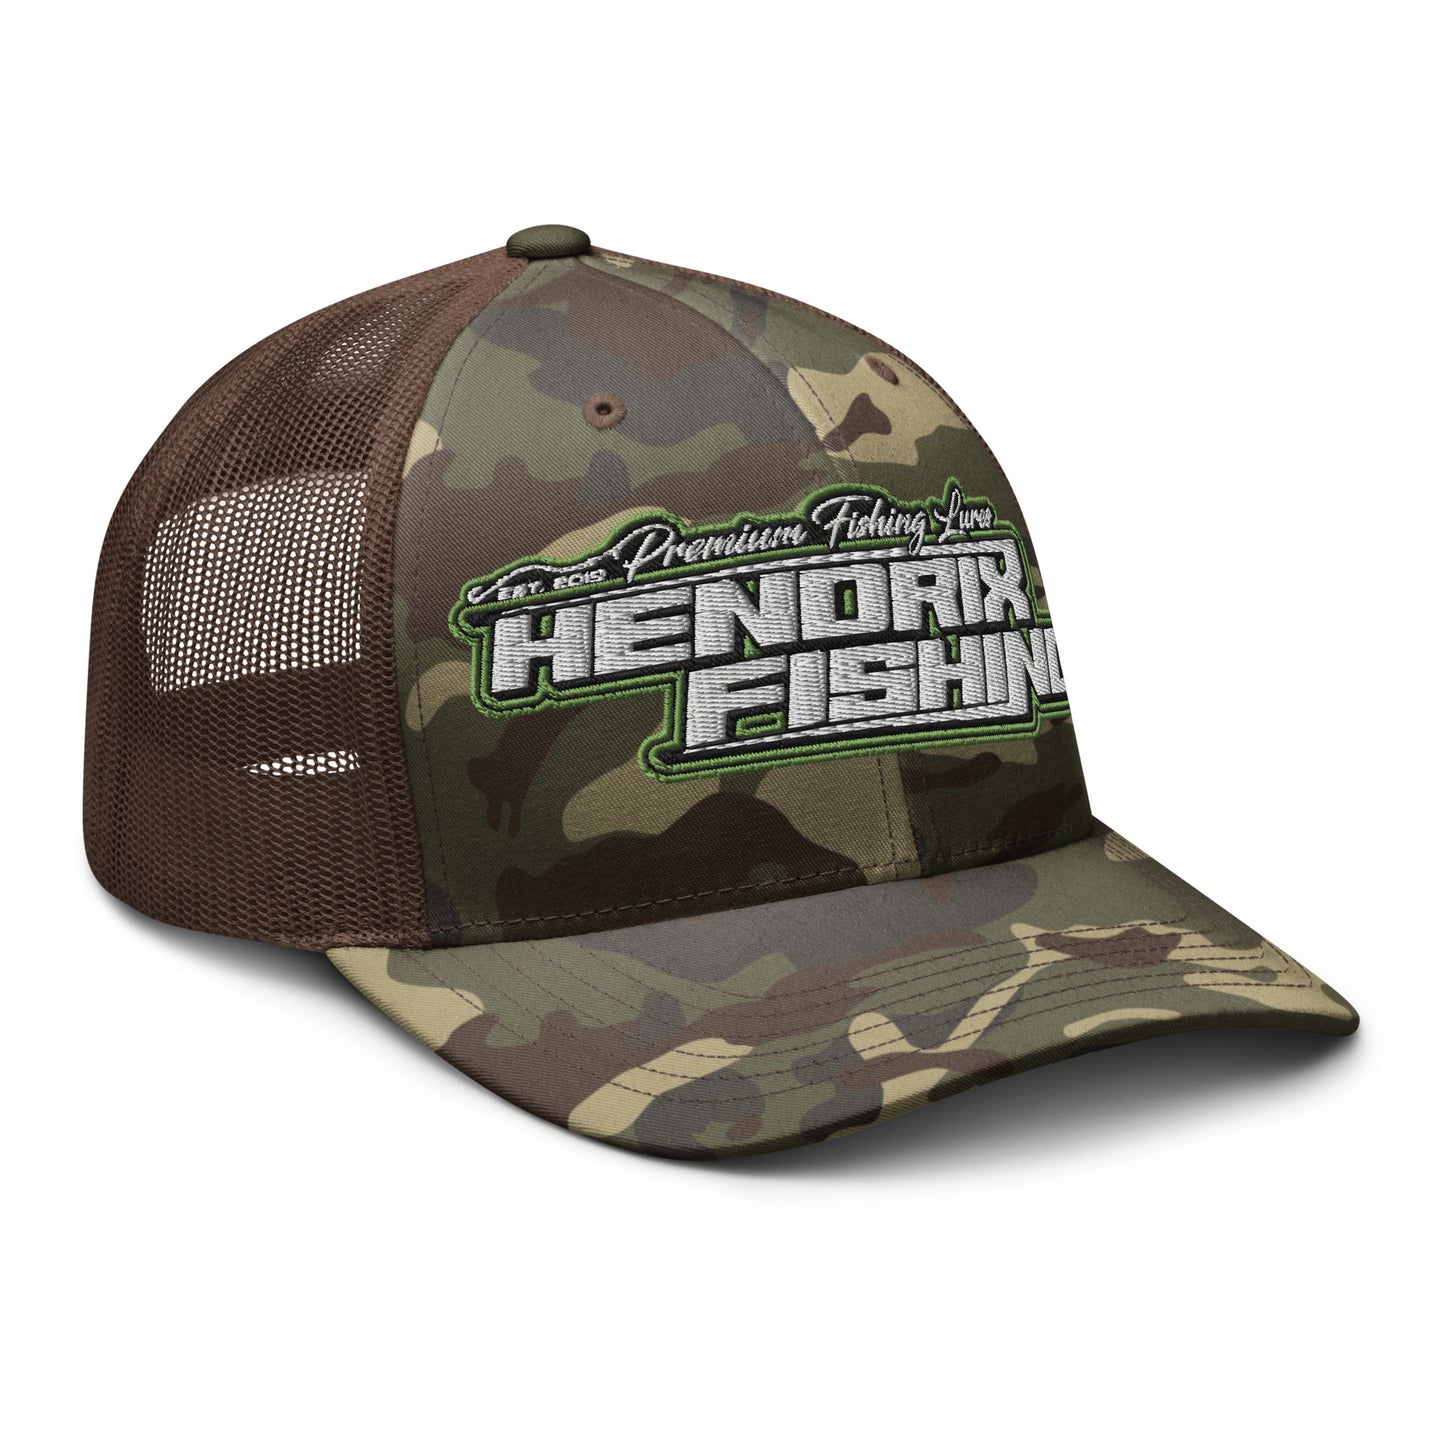 HF Camo trucker hat